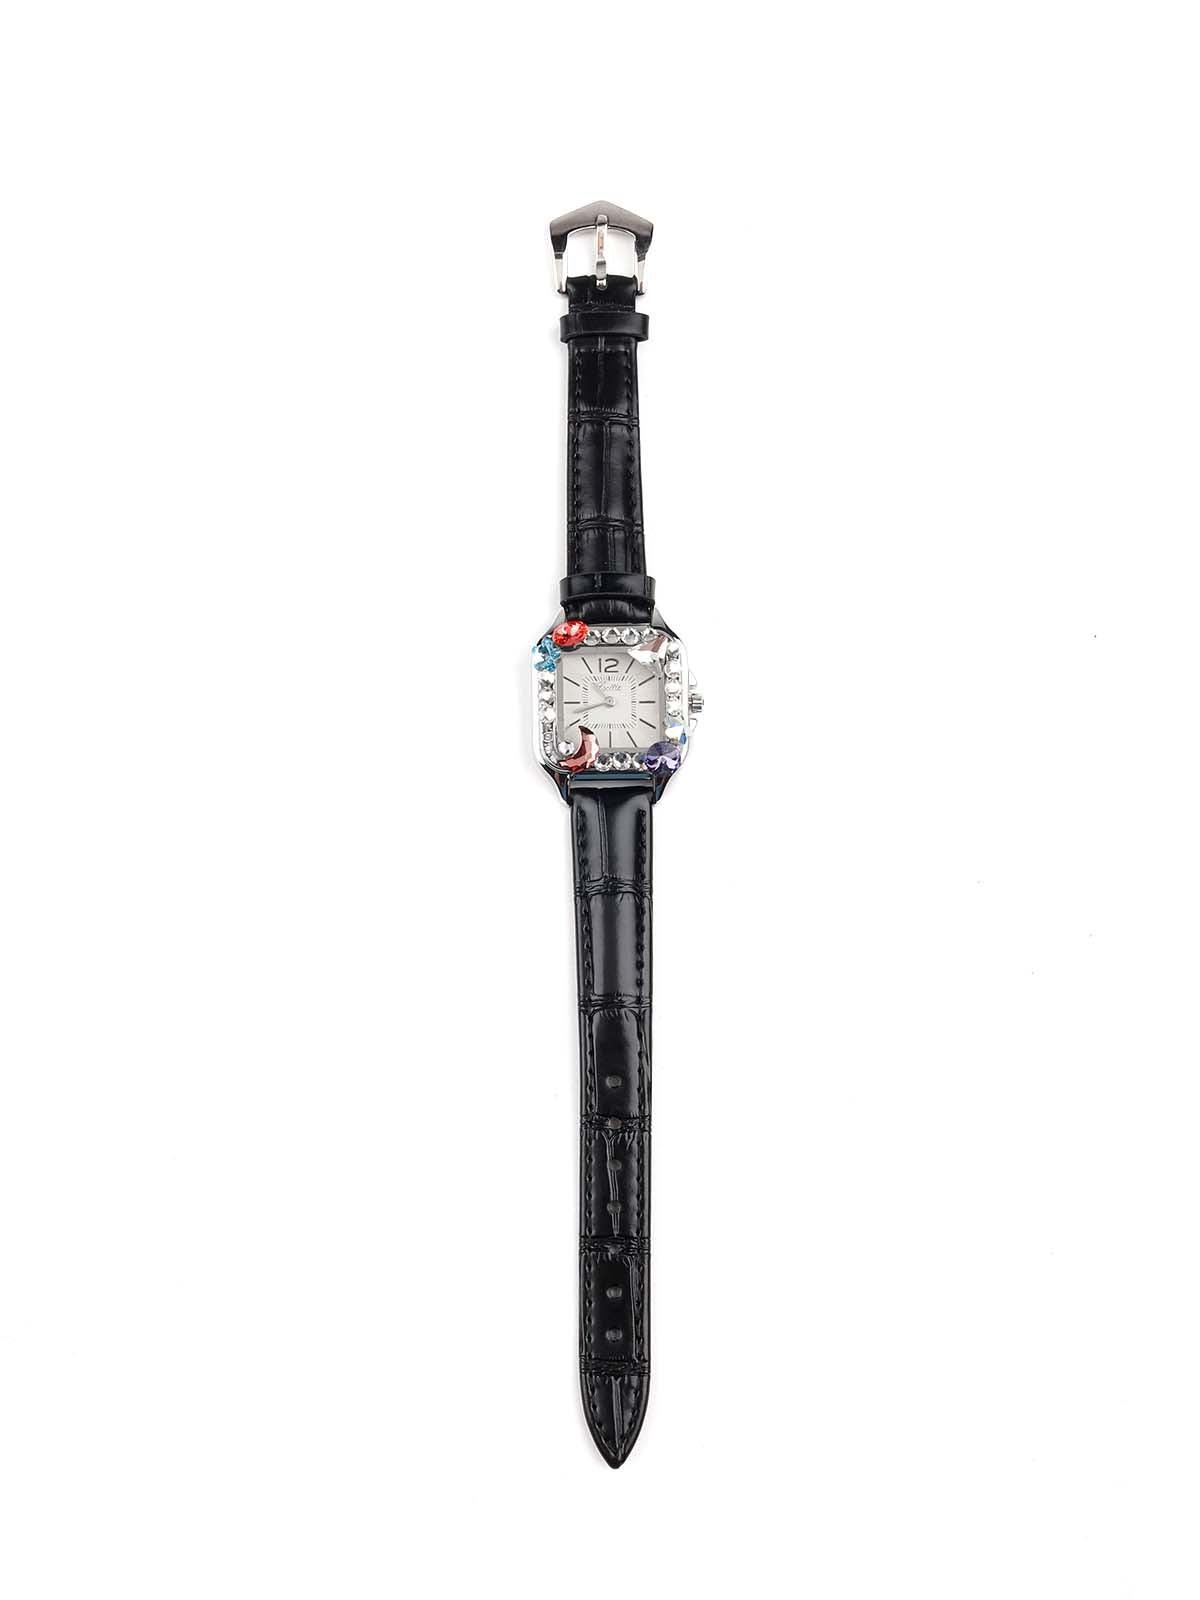 Black textured stunning wristwatch for women - Odette